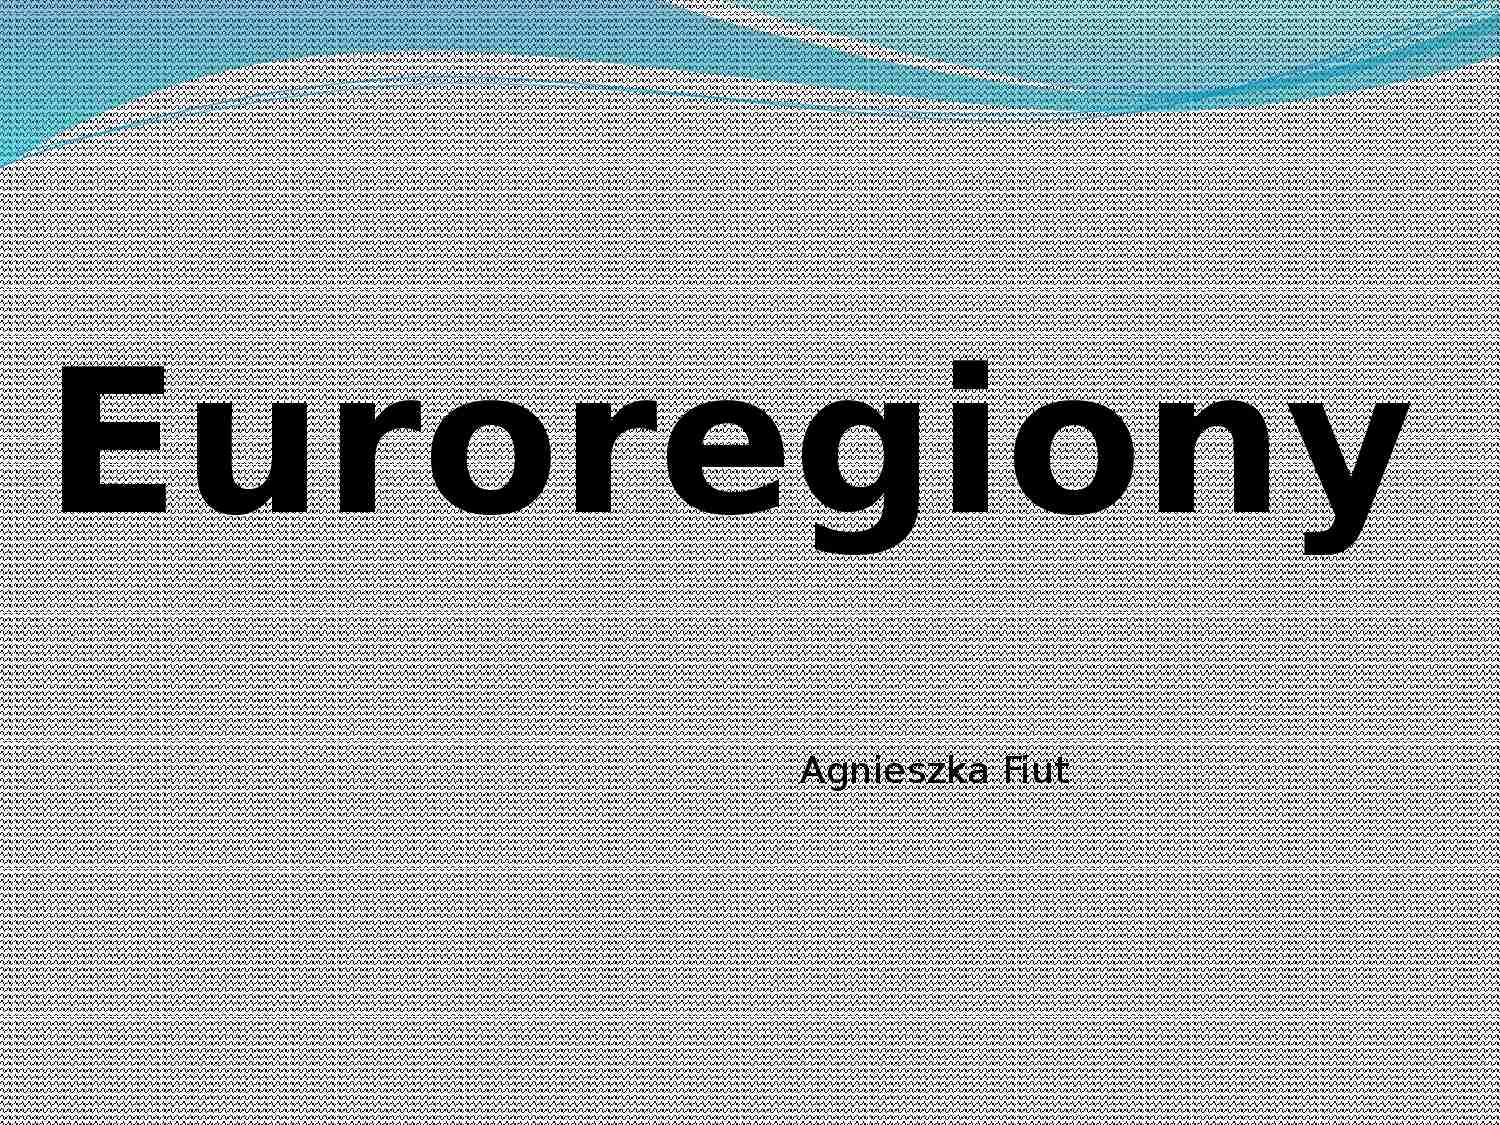 Euroregiony - prezentacja - strona 1